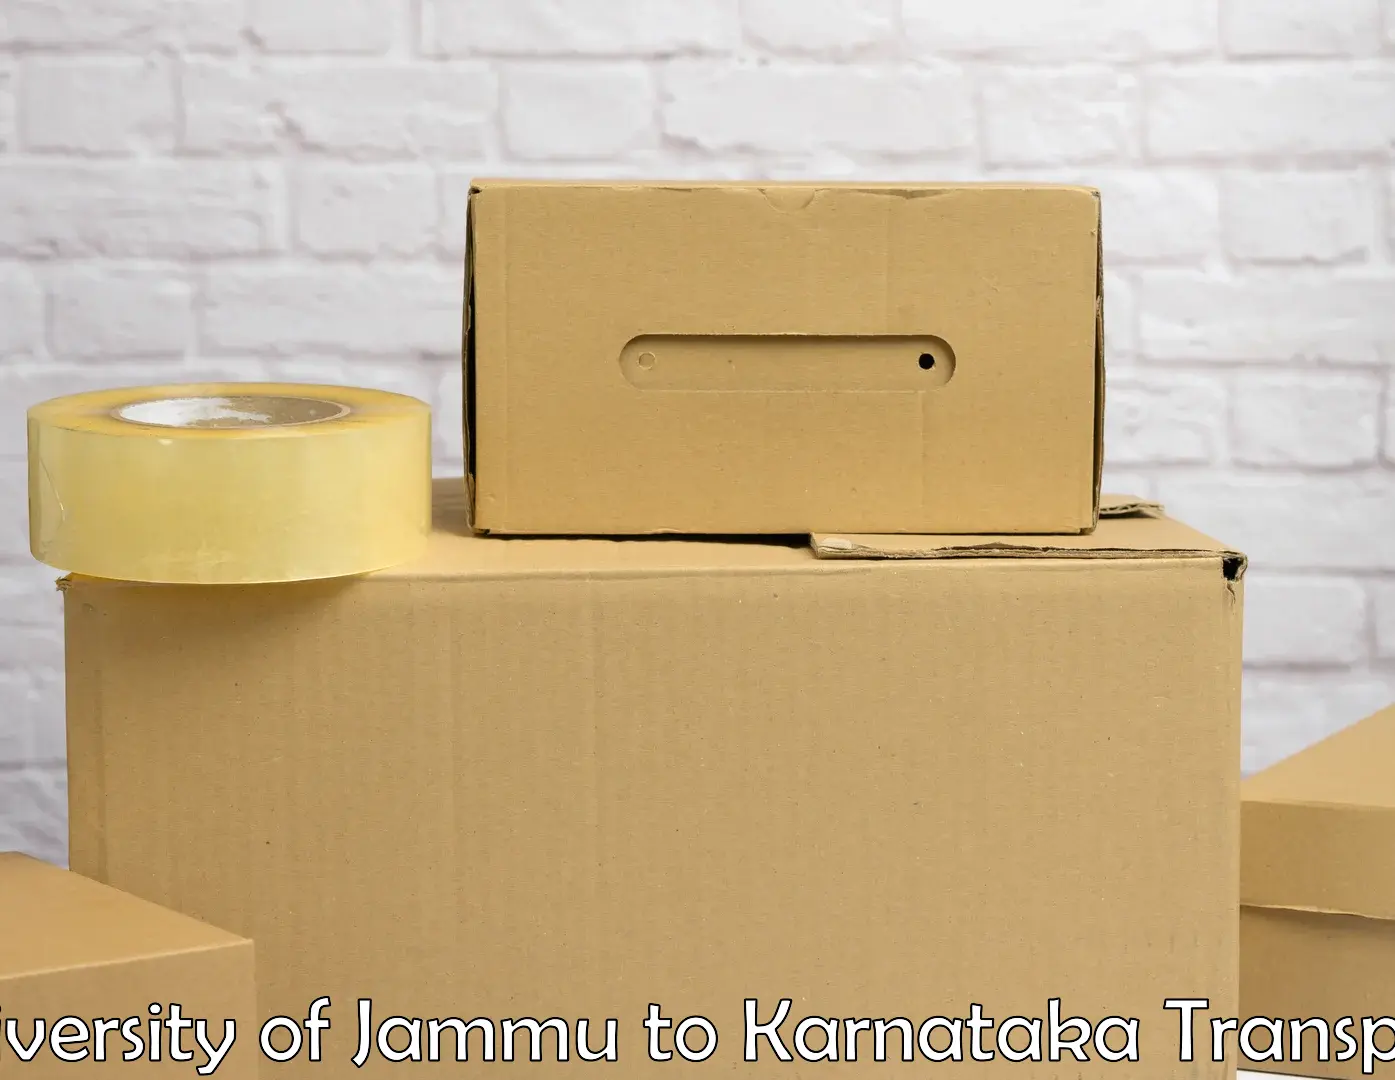 Transport in sharing University of Jammu to Kurugodu